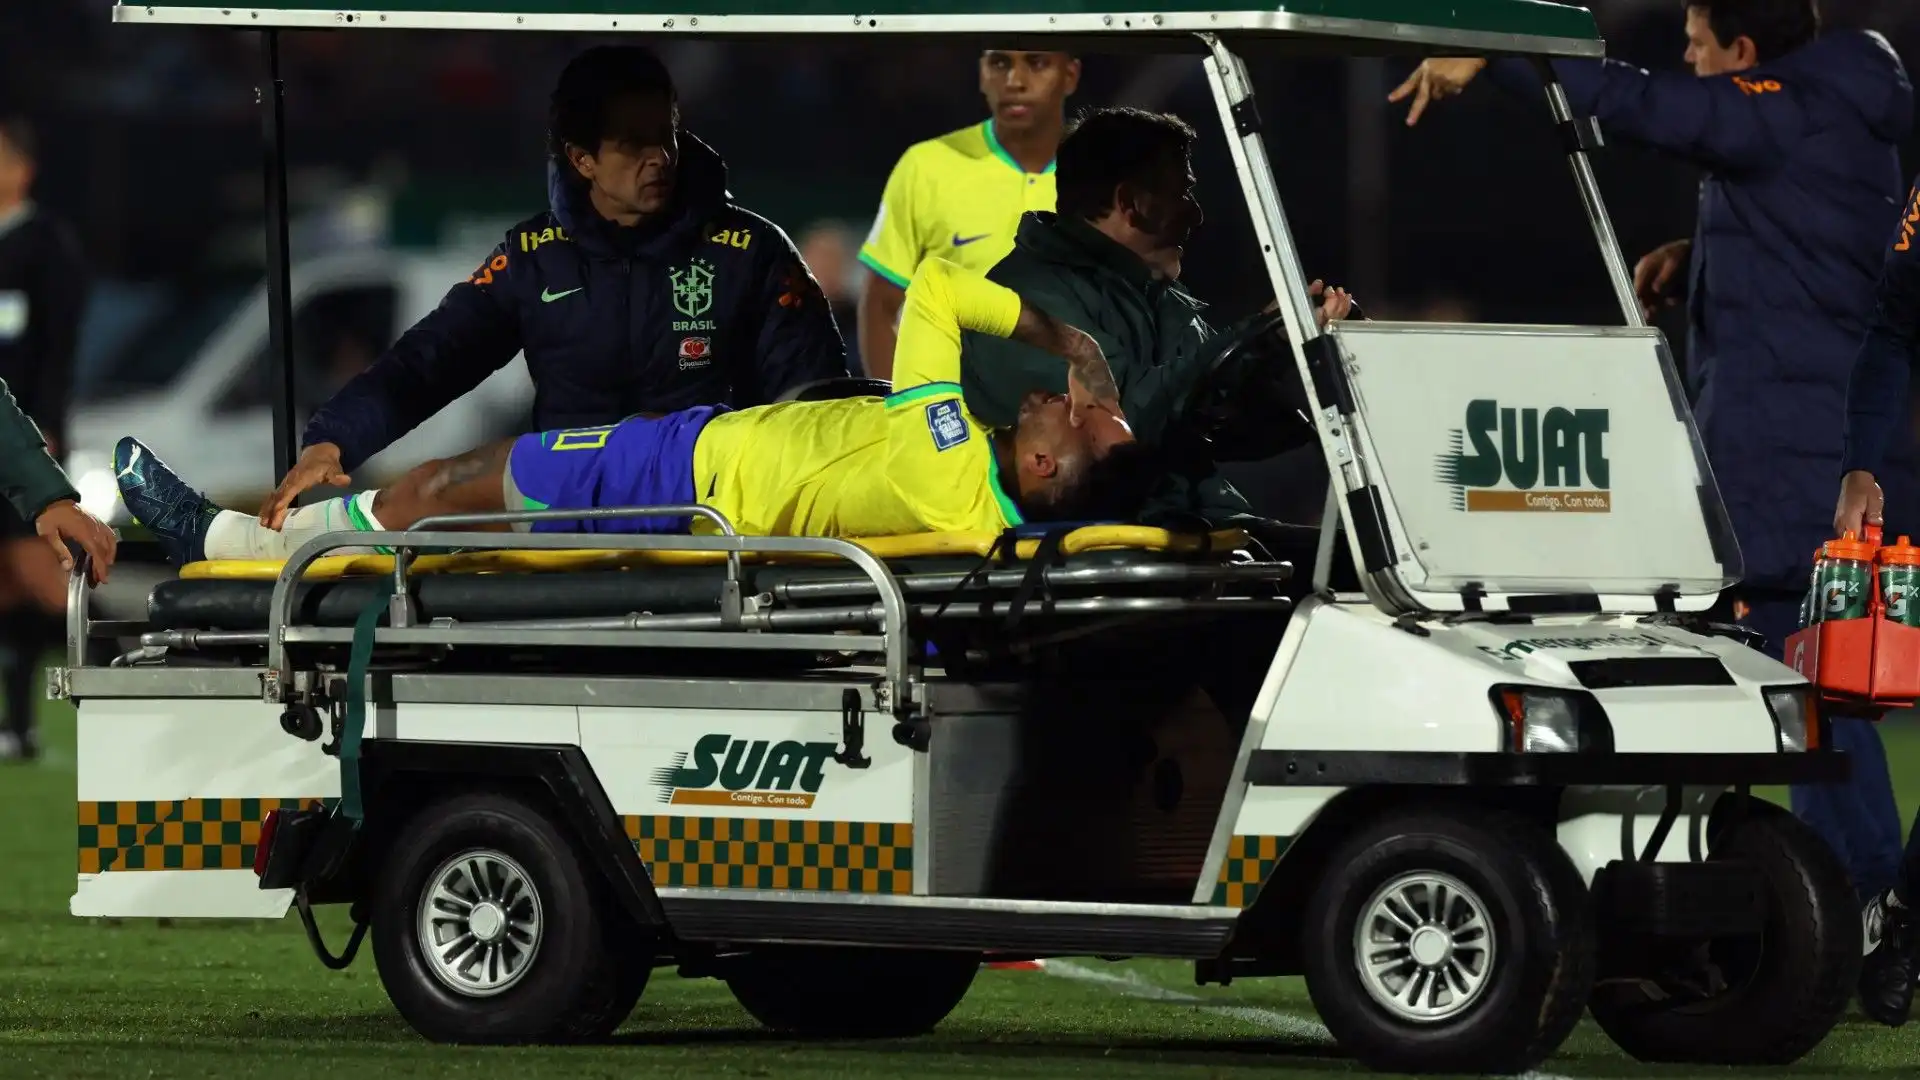 Molti tifosi hanno augurato una pronta guarigione a Neymar attraverso i social